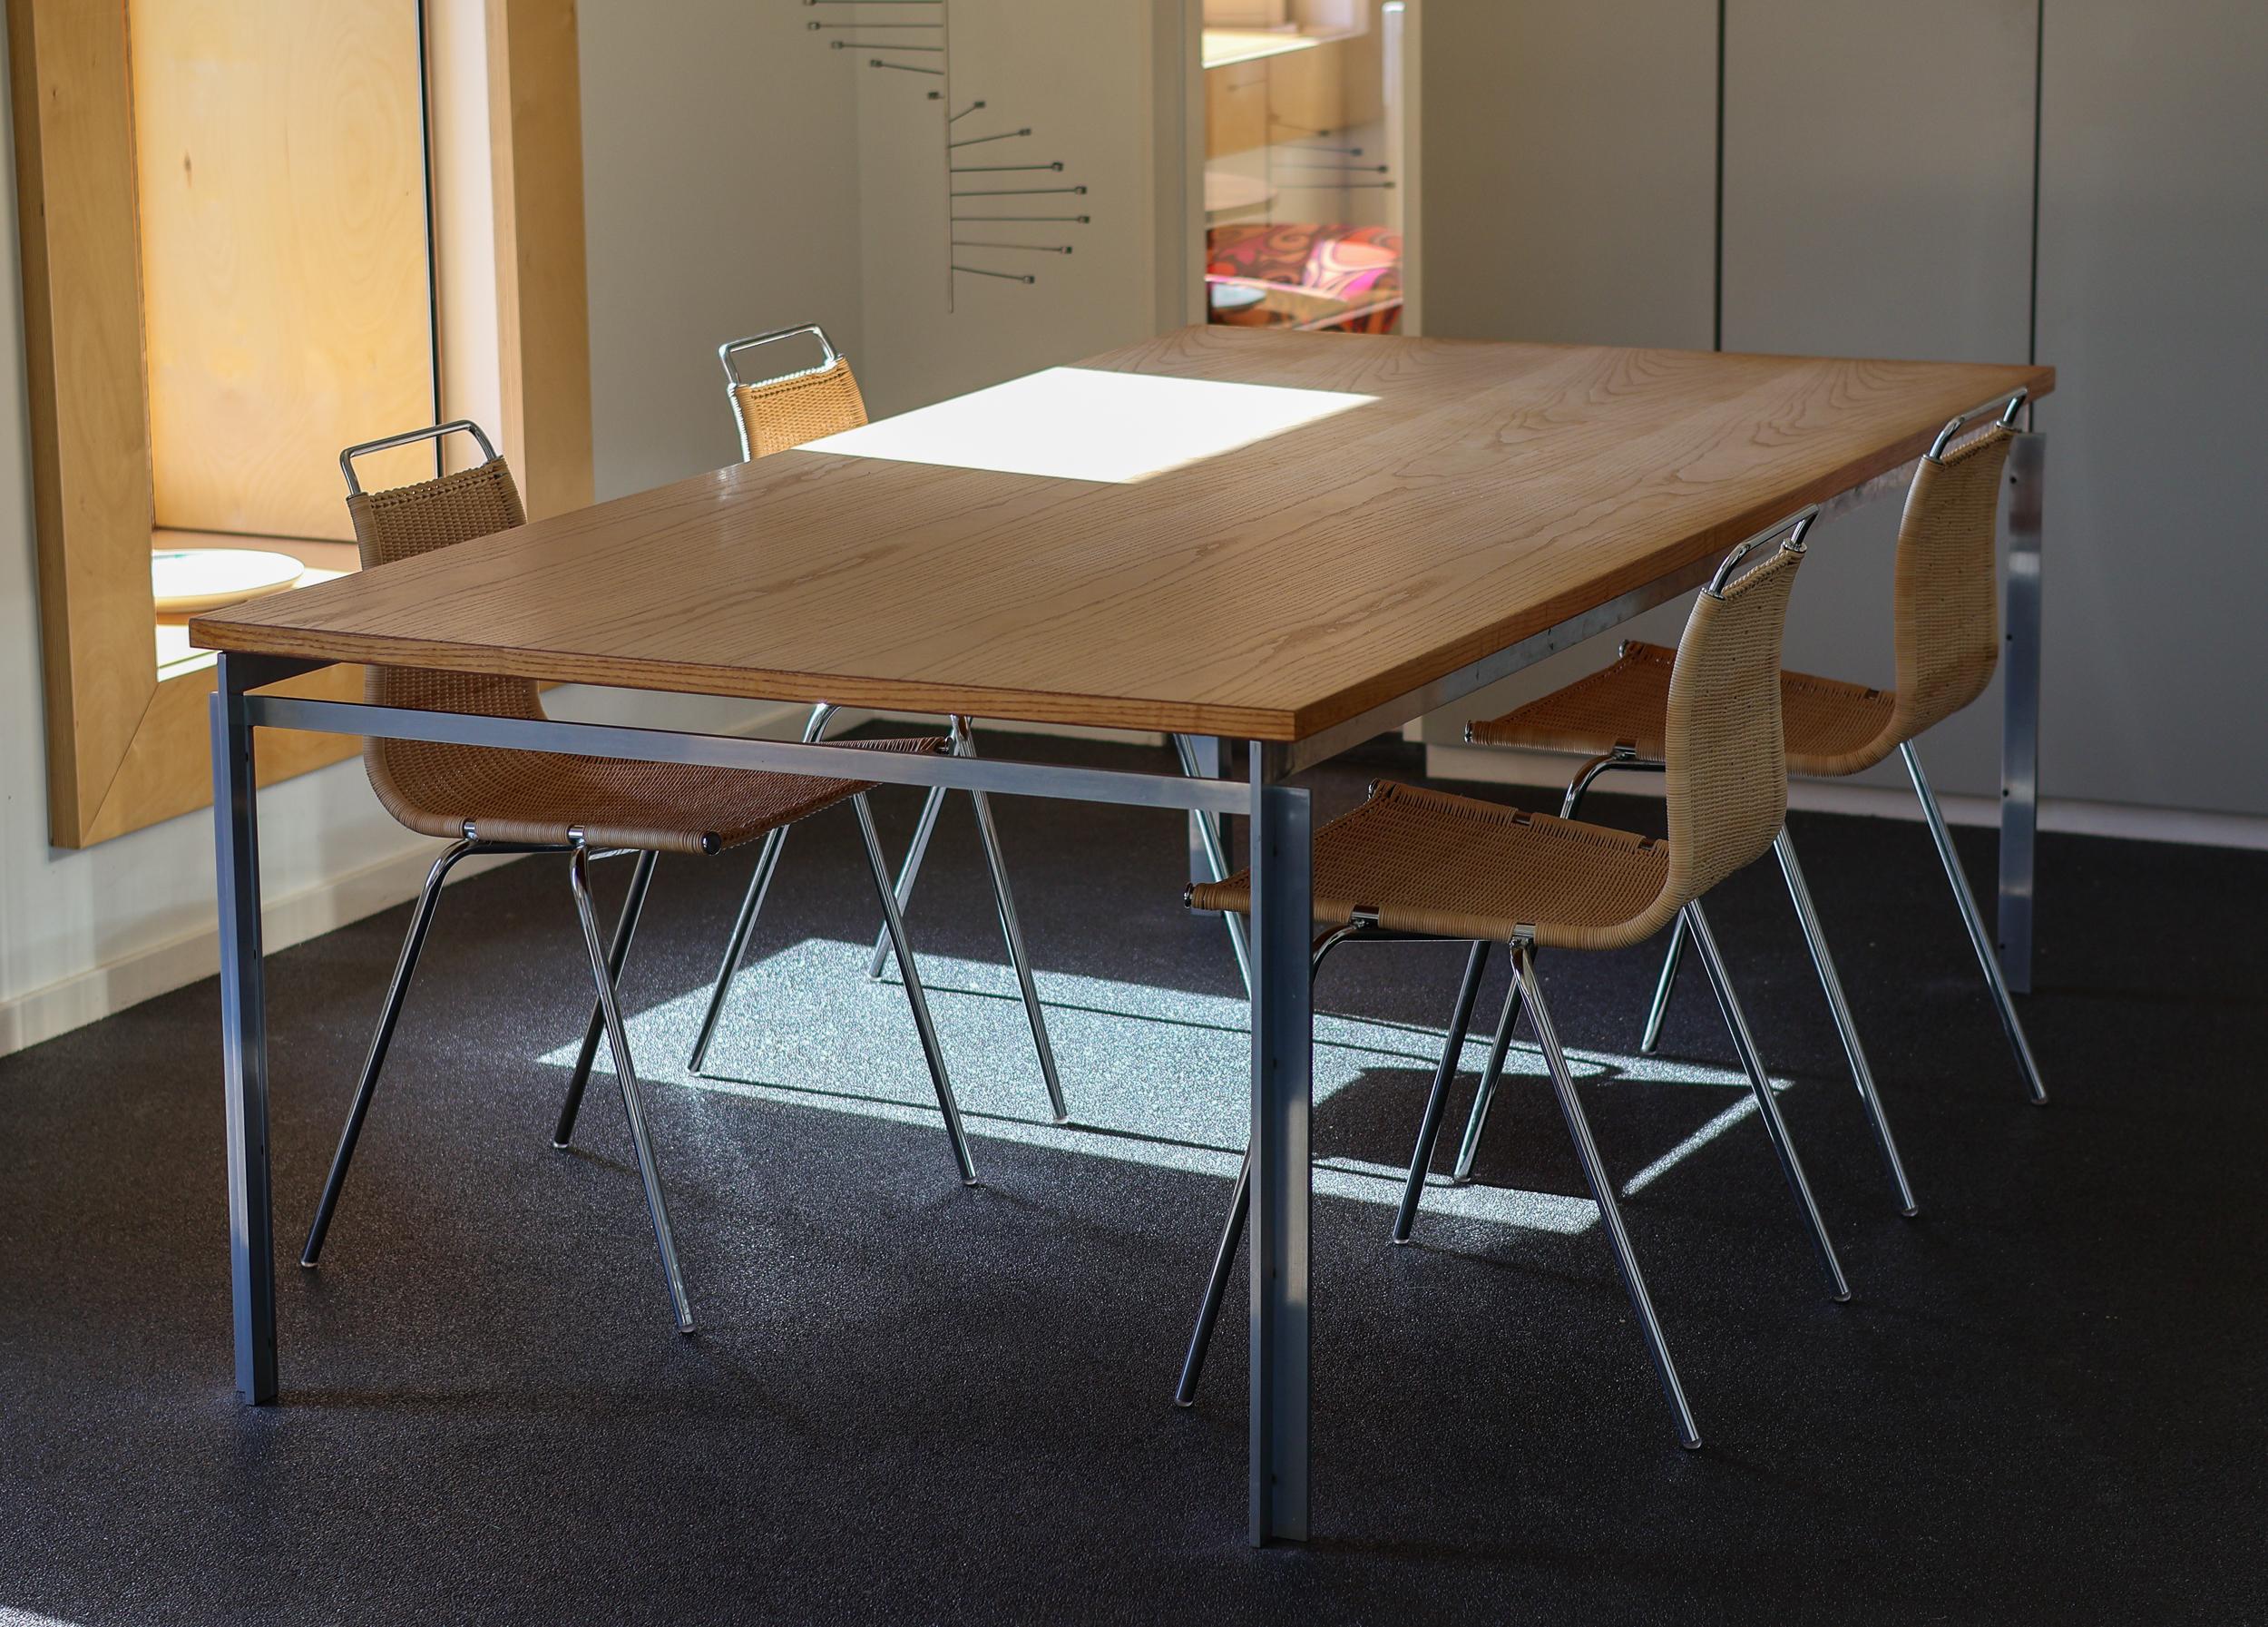 Exemple exceptionnellement bien conservé de l'emblématique table de travail / table à manger modèle PK55 conçue par l'architecte danois Poul Kjaerholm en 1957, fabriquée par Ejvindt Kold Christensen d'après le logo estampillé à l'intérieur du cadre